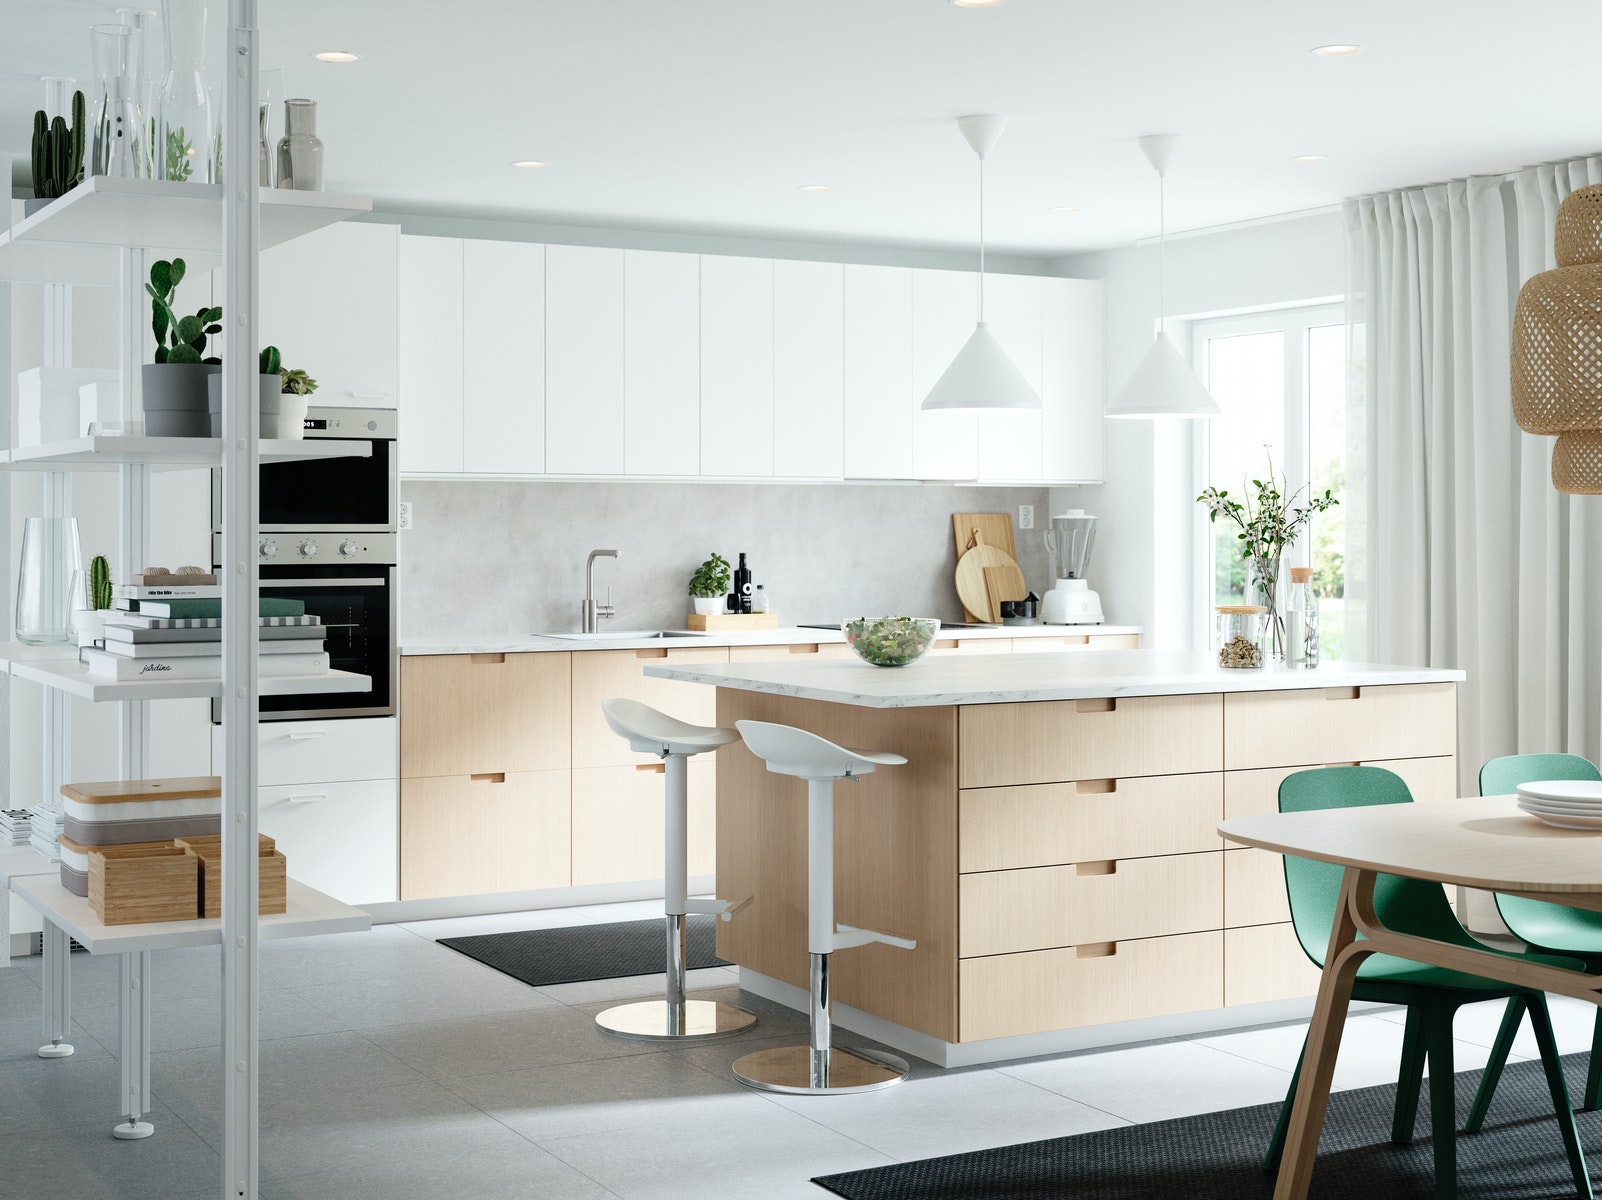 IKEA - Μια βιώσιμη κουζίνα για έναν οικολογικό τρόπο ζωής 